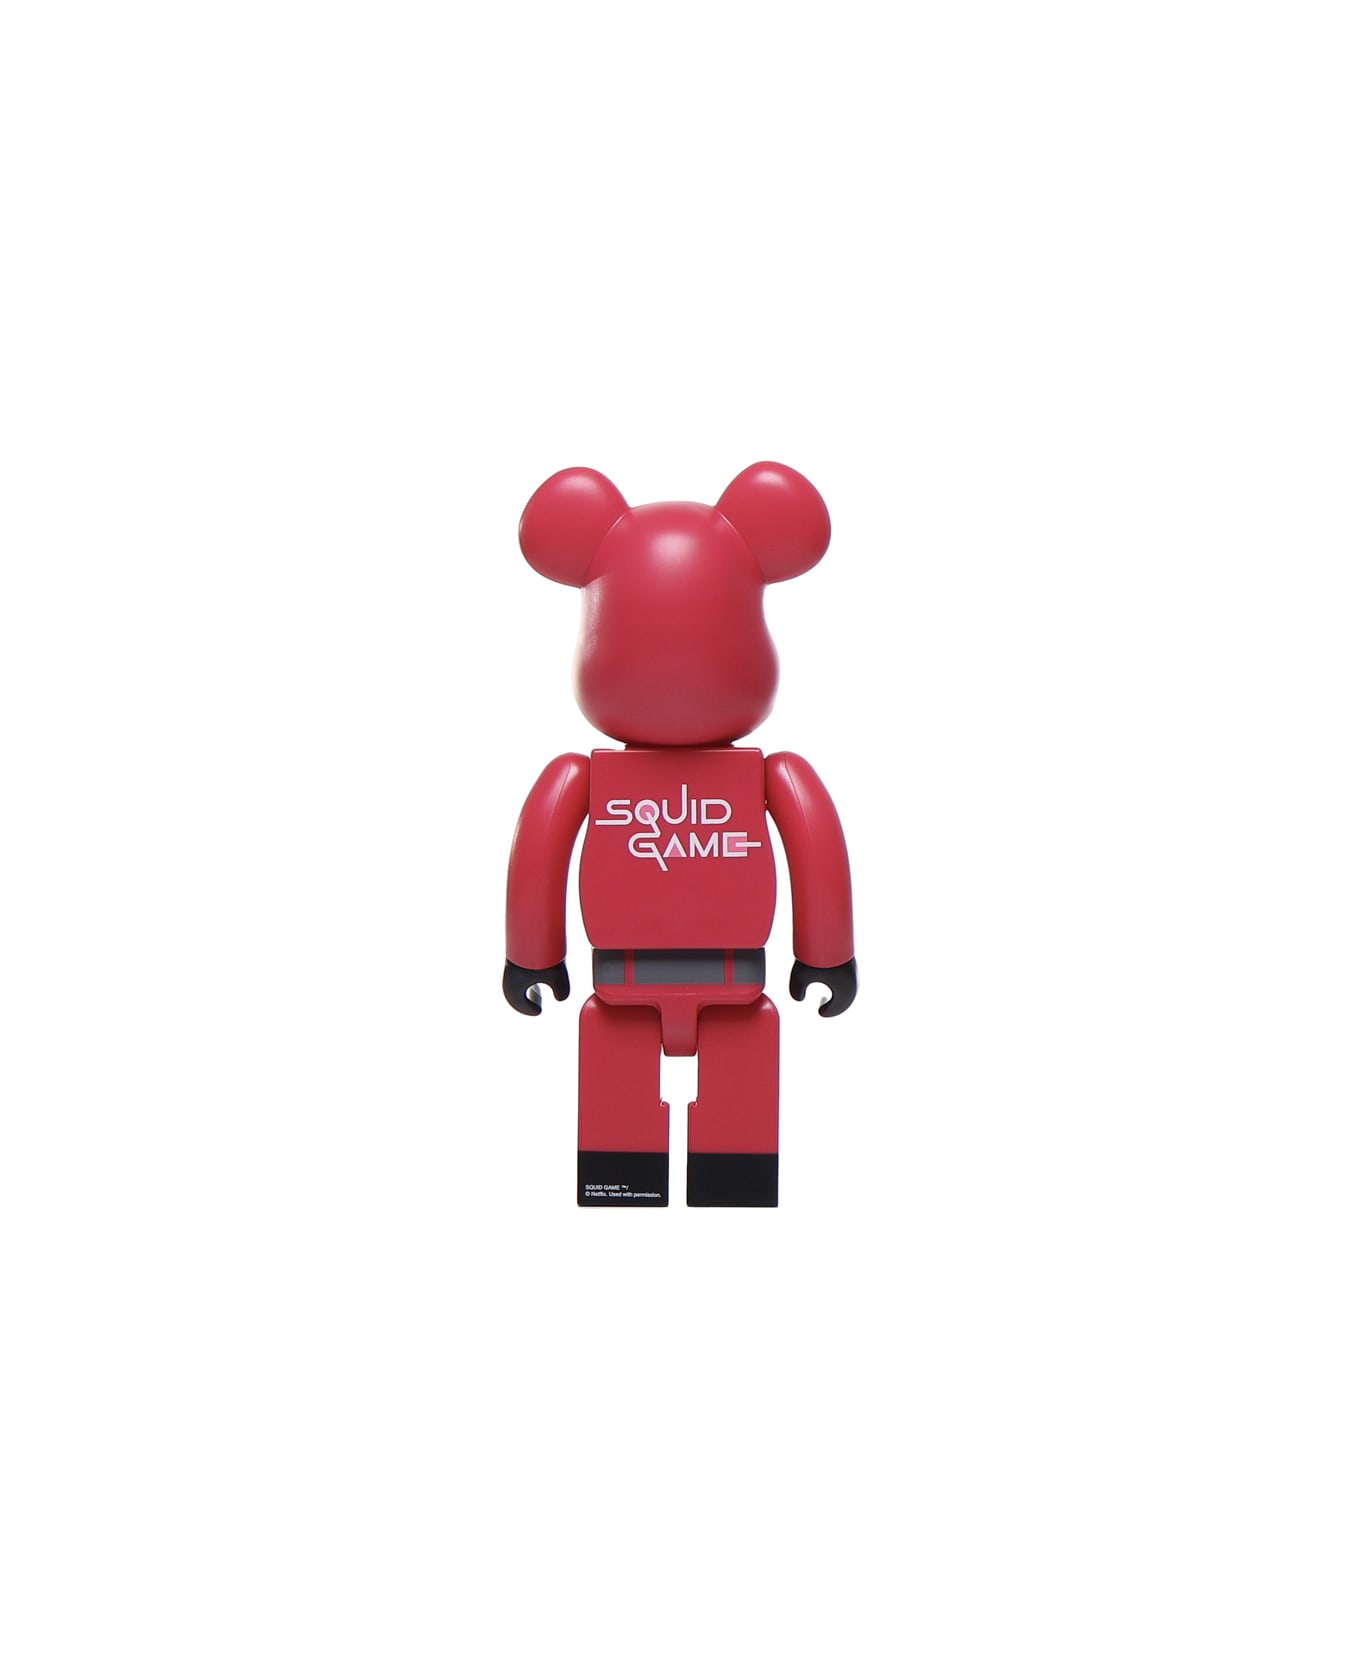 Medicom Toy Squid Game Guard Square - Black, red アクセサリー